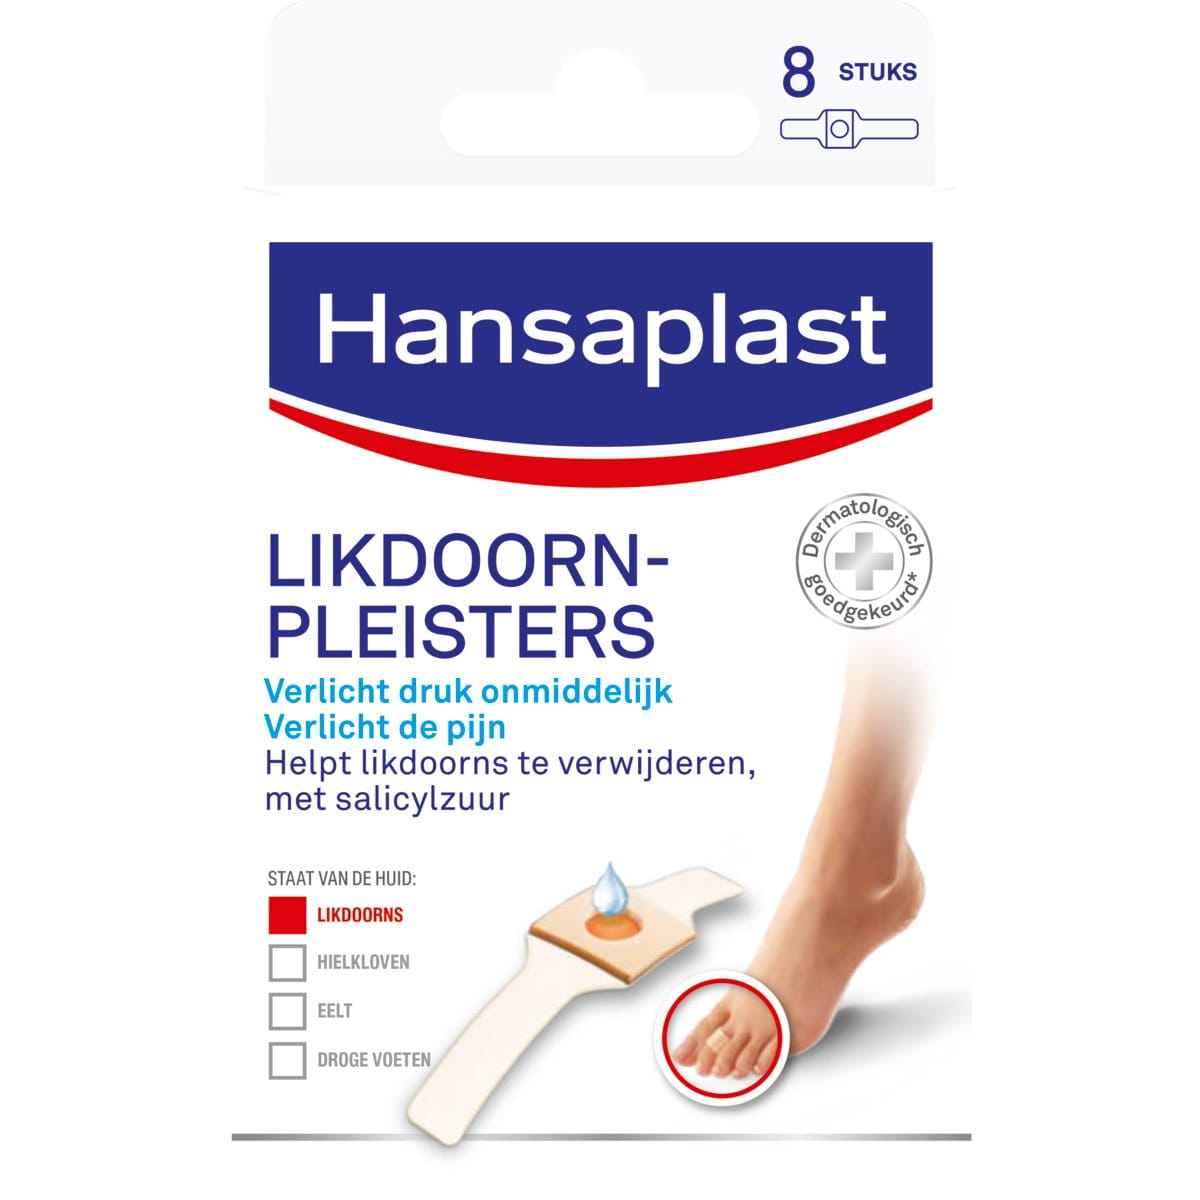 Likdoorn pleisters - Hansaplast